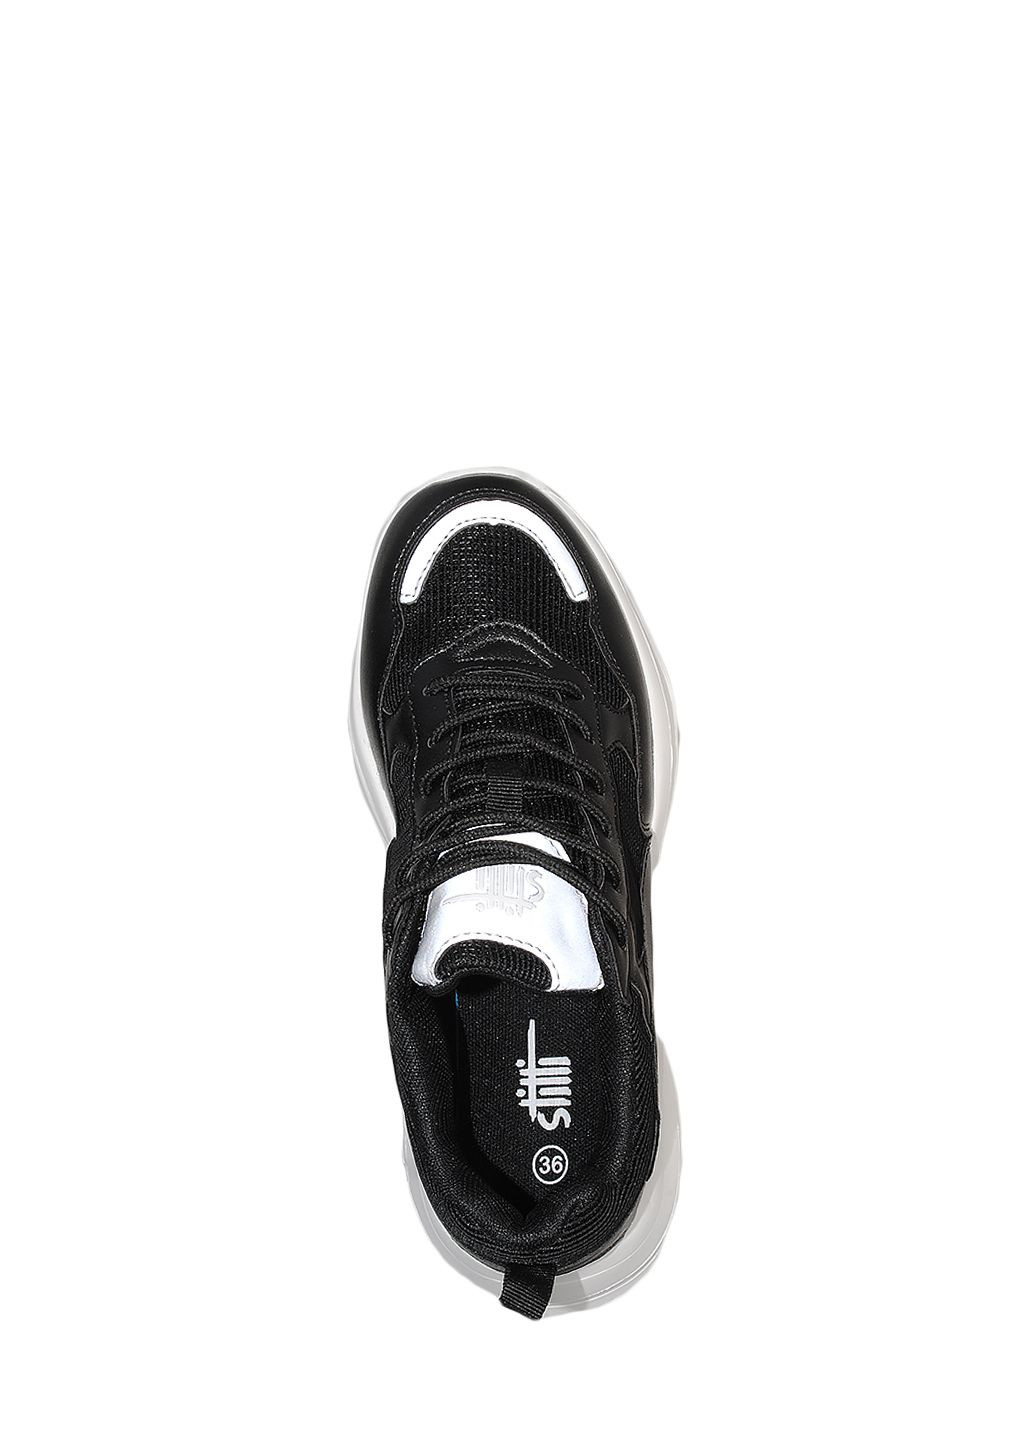 Черные демисезонные кроссовки st1800-8 black Stilli